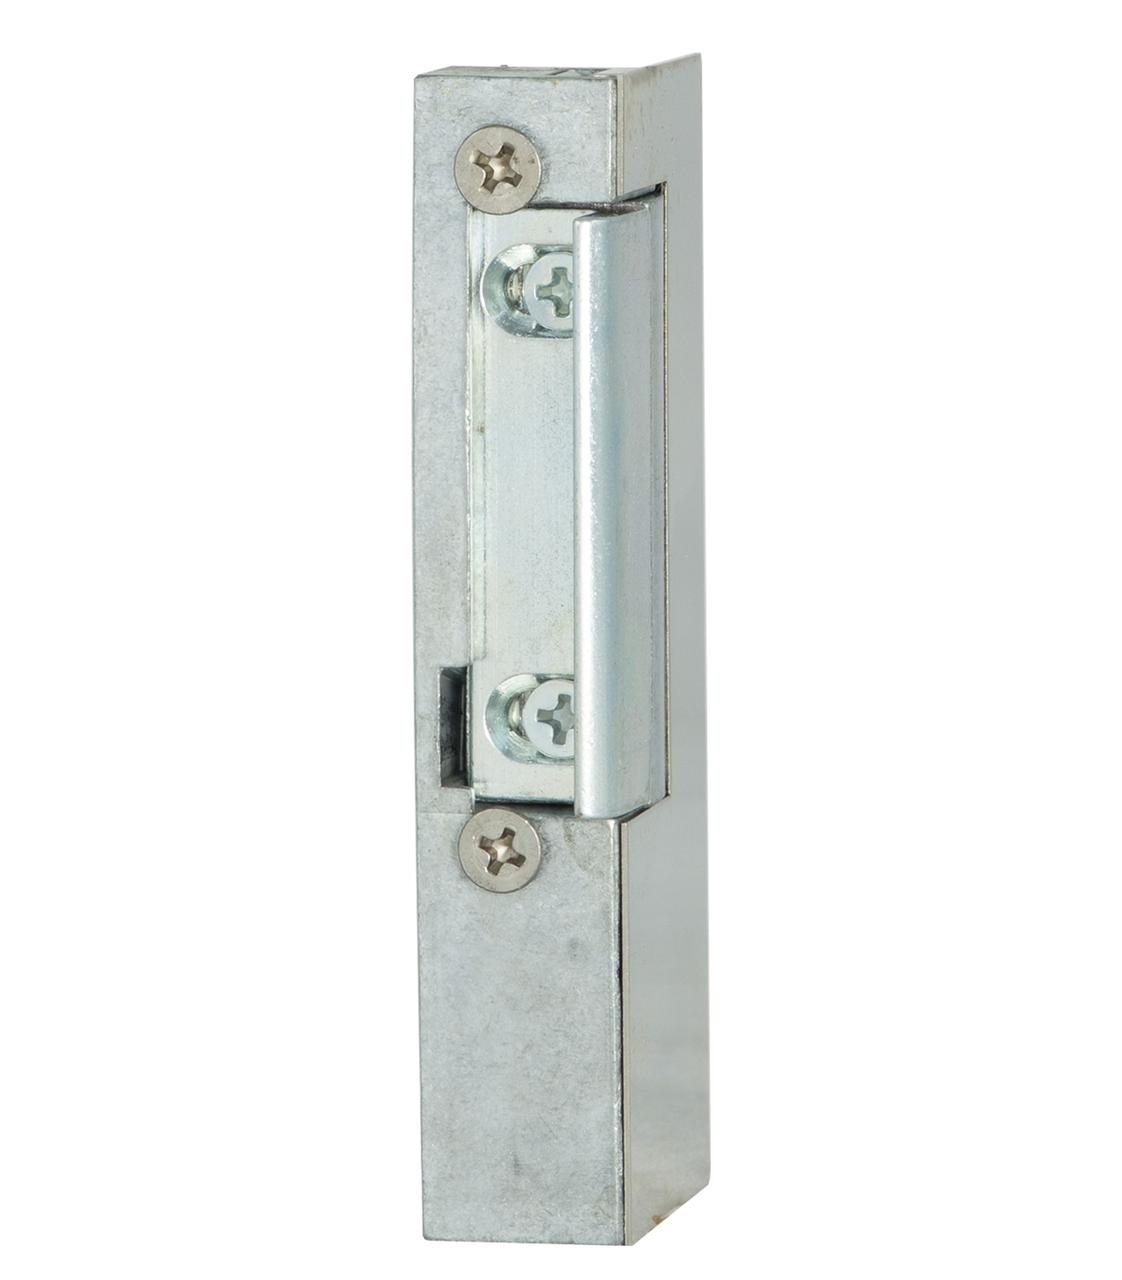 Електромеханічна клямка EFF EFF 19 AV--------R11 НЗ для профильних дверей, фото 1